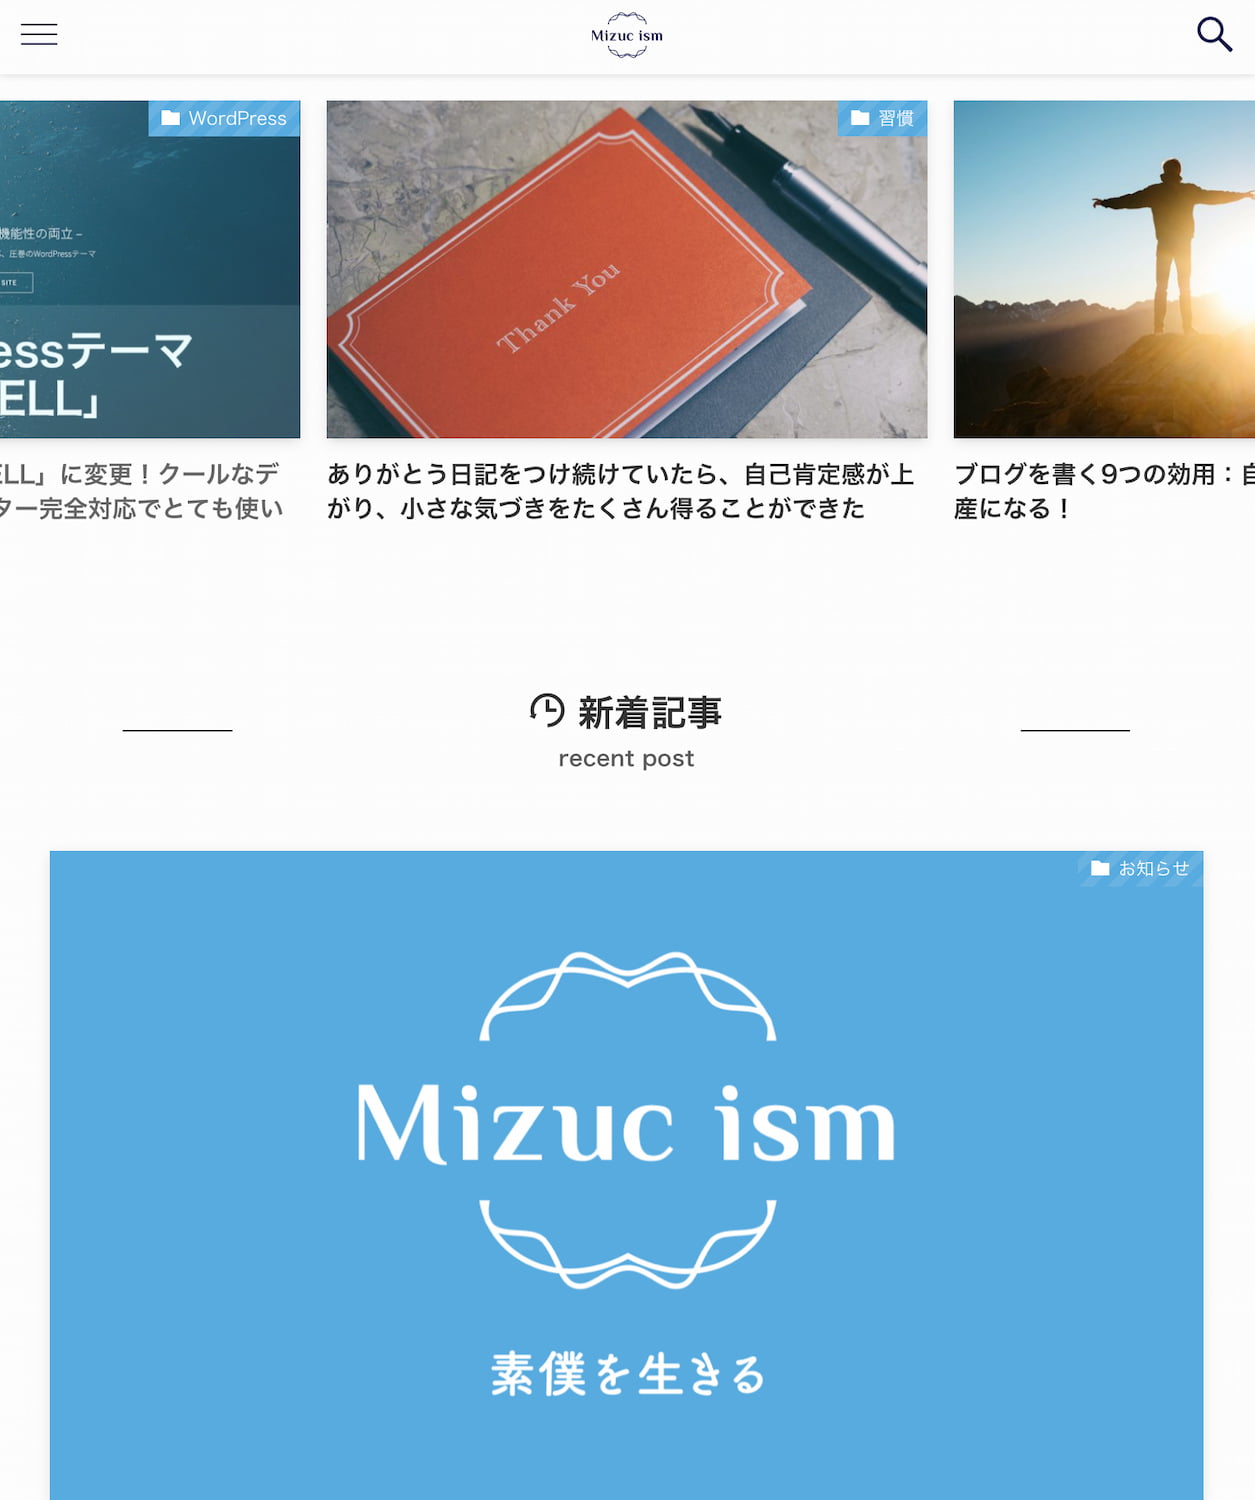 「Mizuc ism 素僕を生きるブログ」トップページスマホスクリーンショット